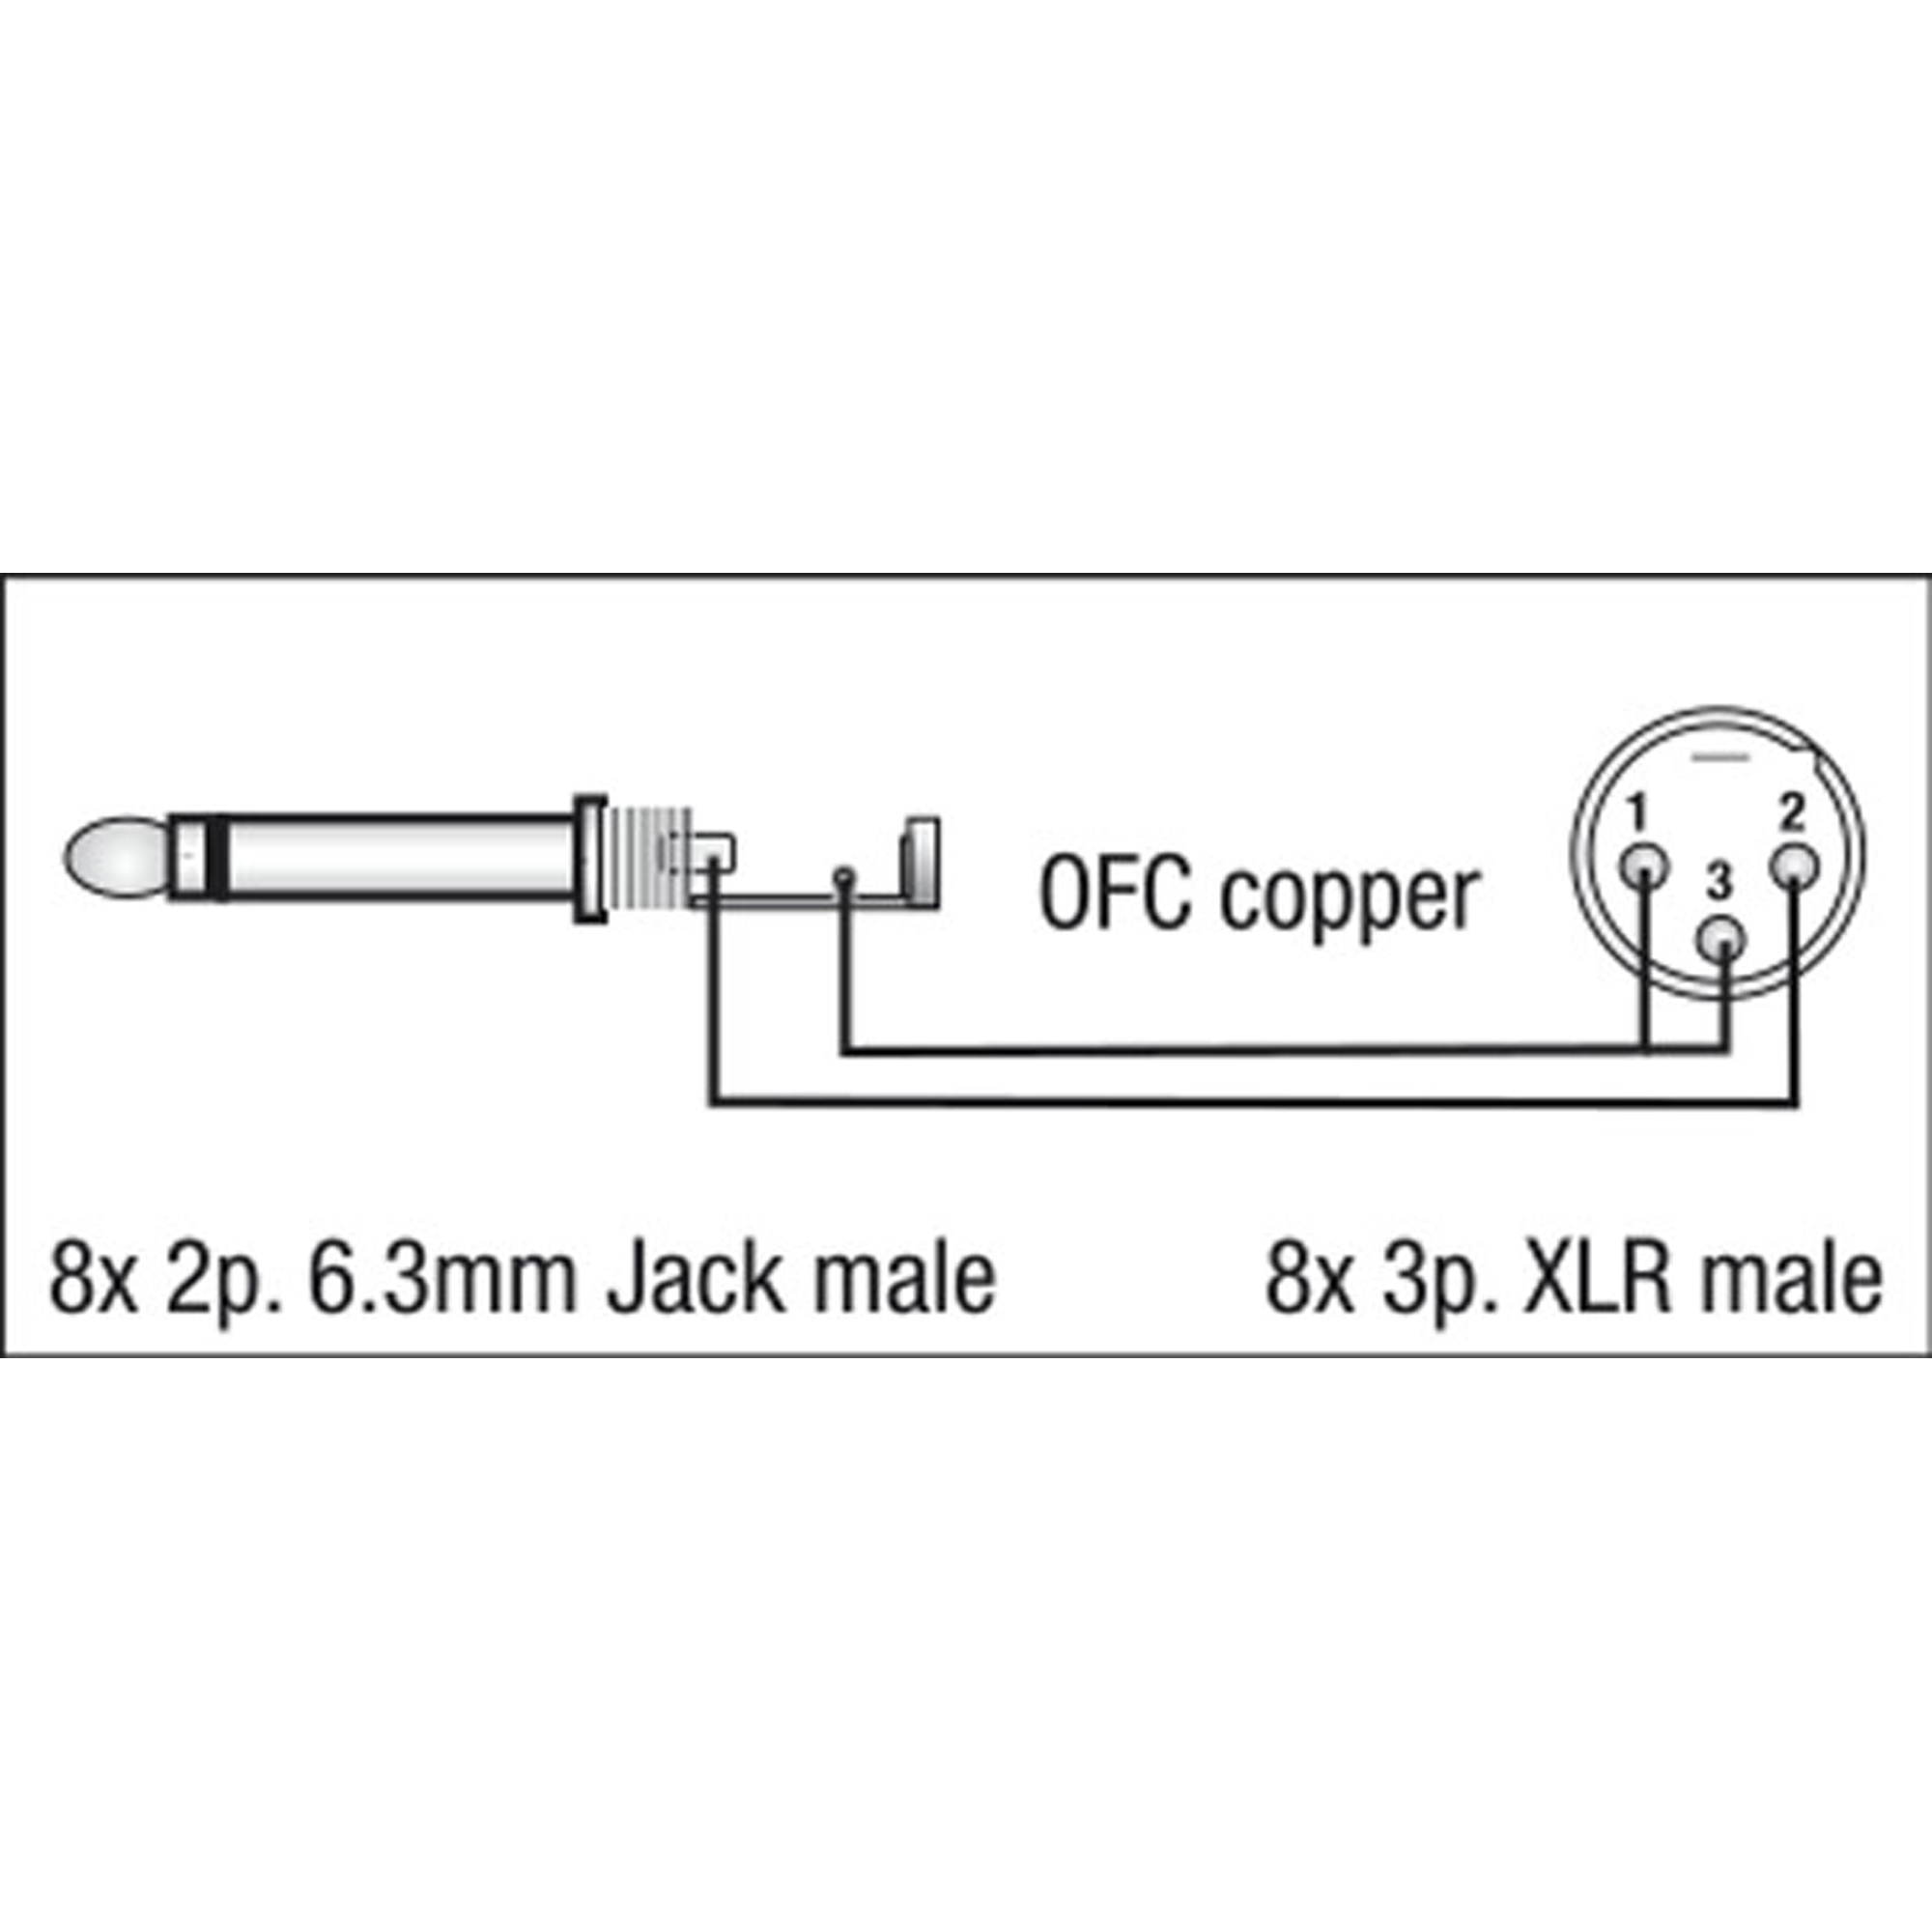 DAP FL62 - 8 XLR/M 3P to 8 Jack mono 3 m